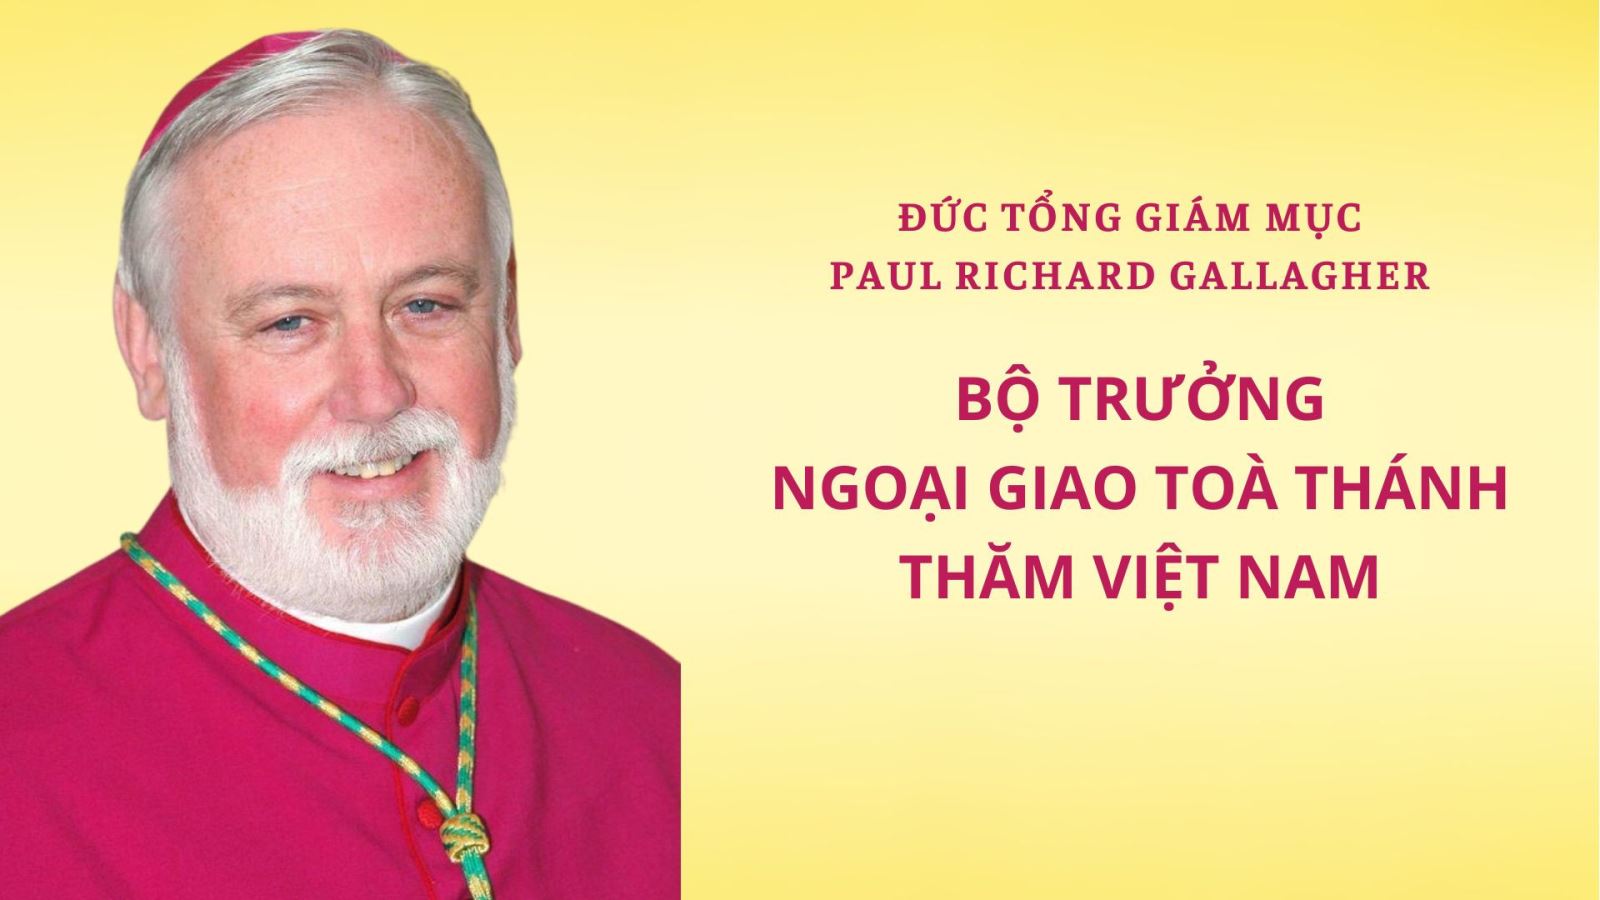 Đức Tổng Giám mục Paul Richard Gallagher, Bộ trưởng Ngoại giao Toà Thánh